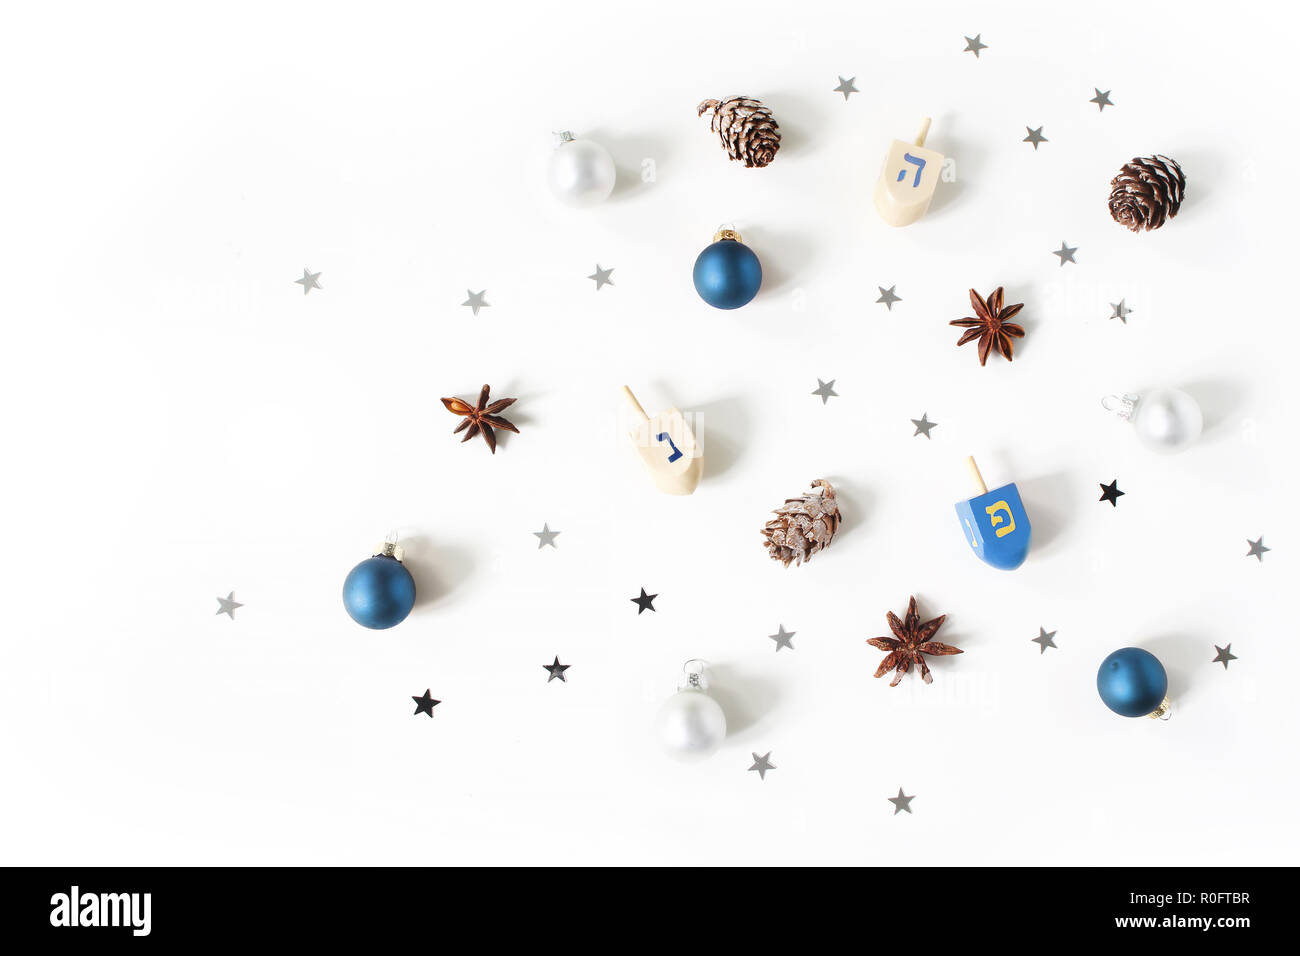 Hanukkah elegante composizione madre. Motivo decorativo. Legno giocattoli dreidel, larice coni, anice e argento coriandoli stelle decorazione su sfondo bianco. Appartamento laico, vista dall'alto. Design ebraica. Foto Stock